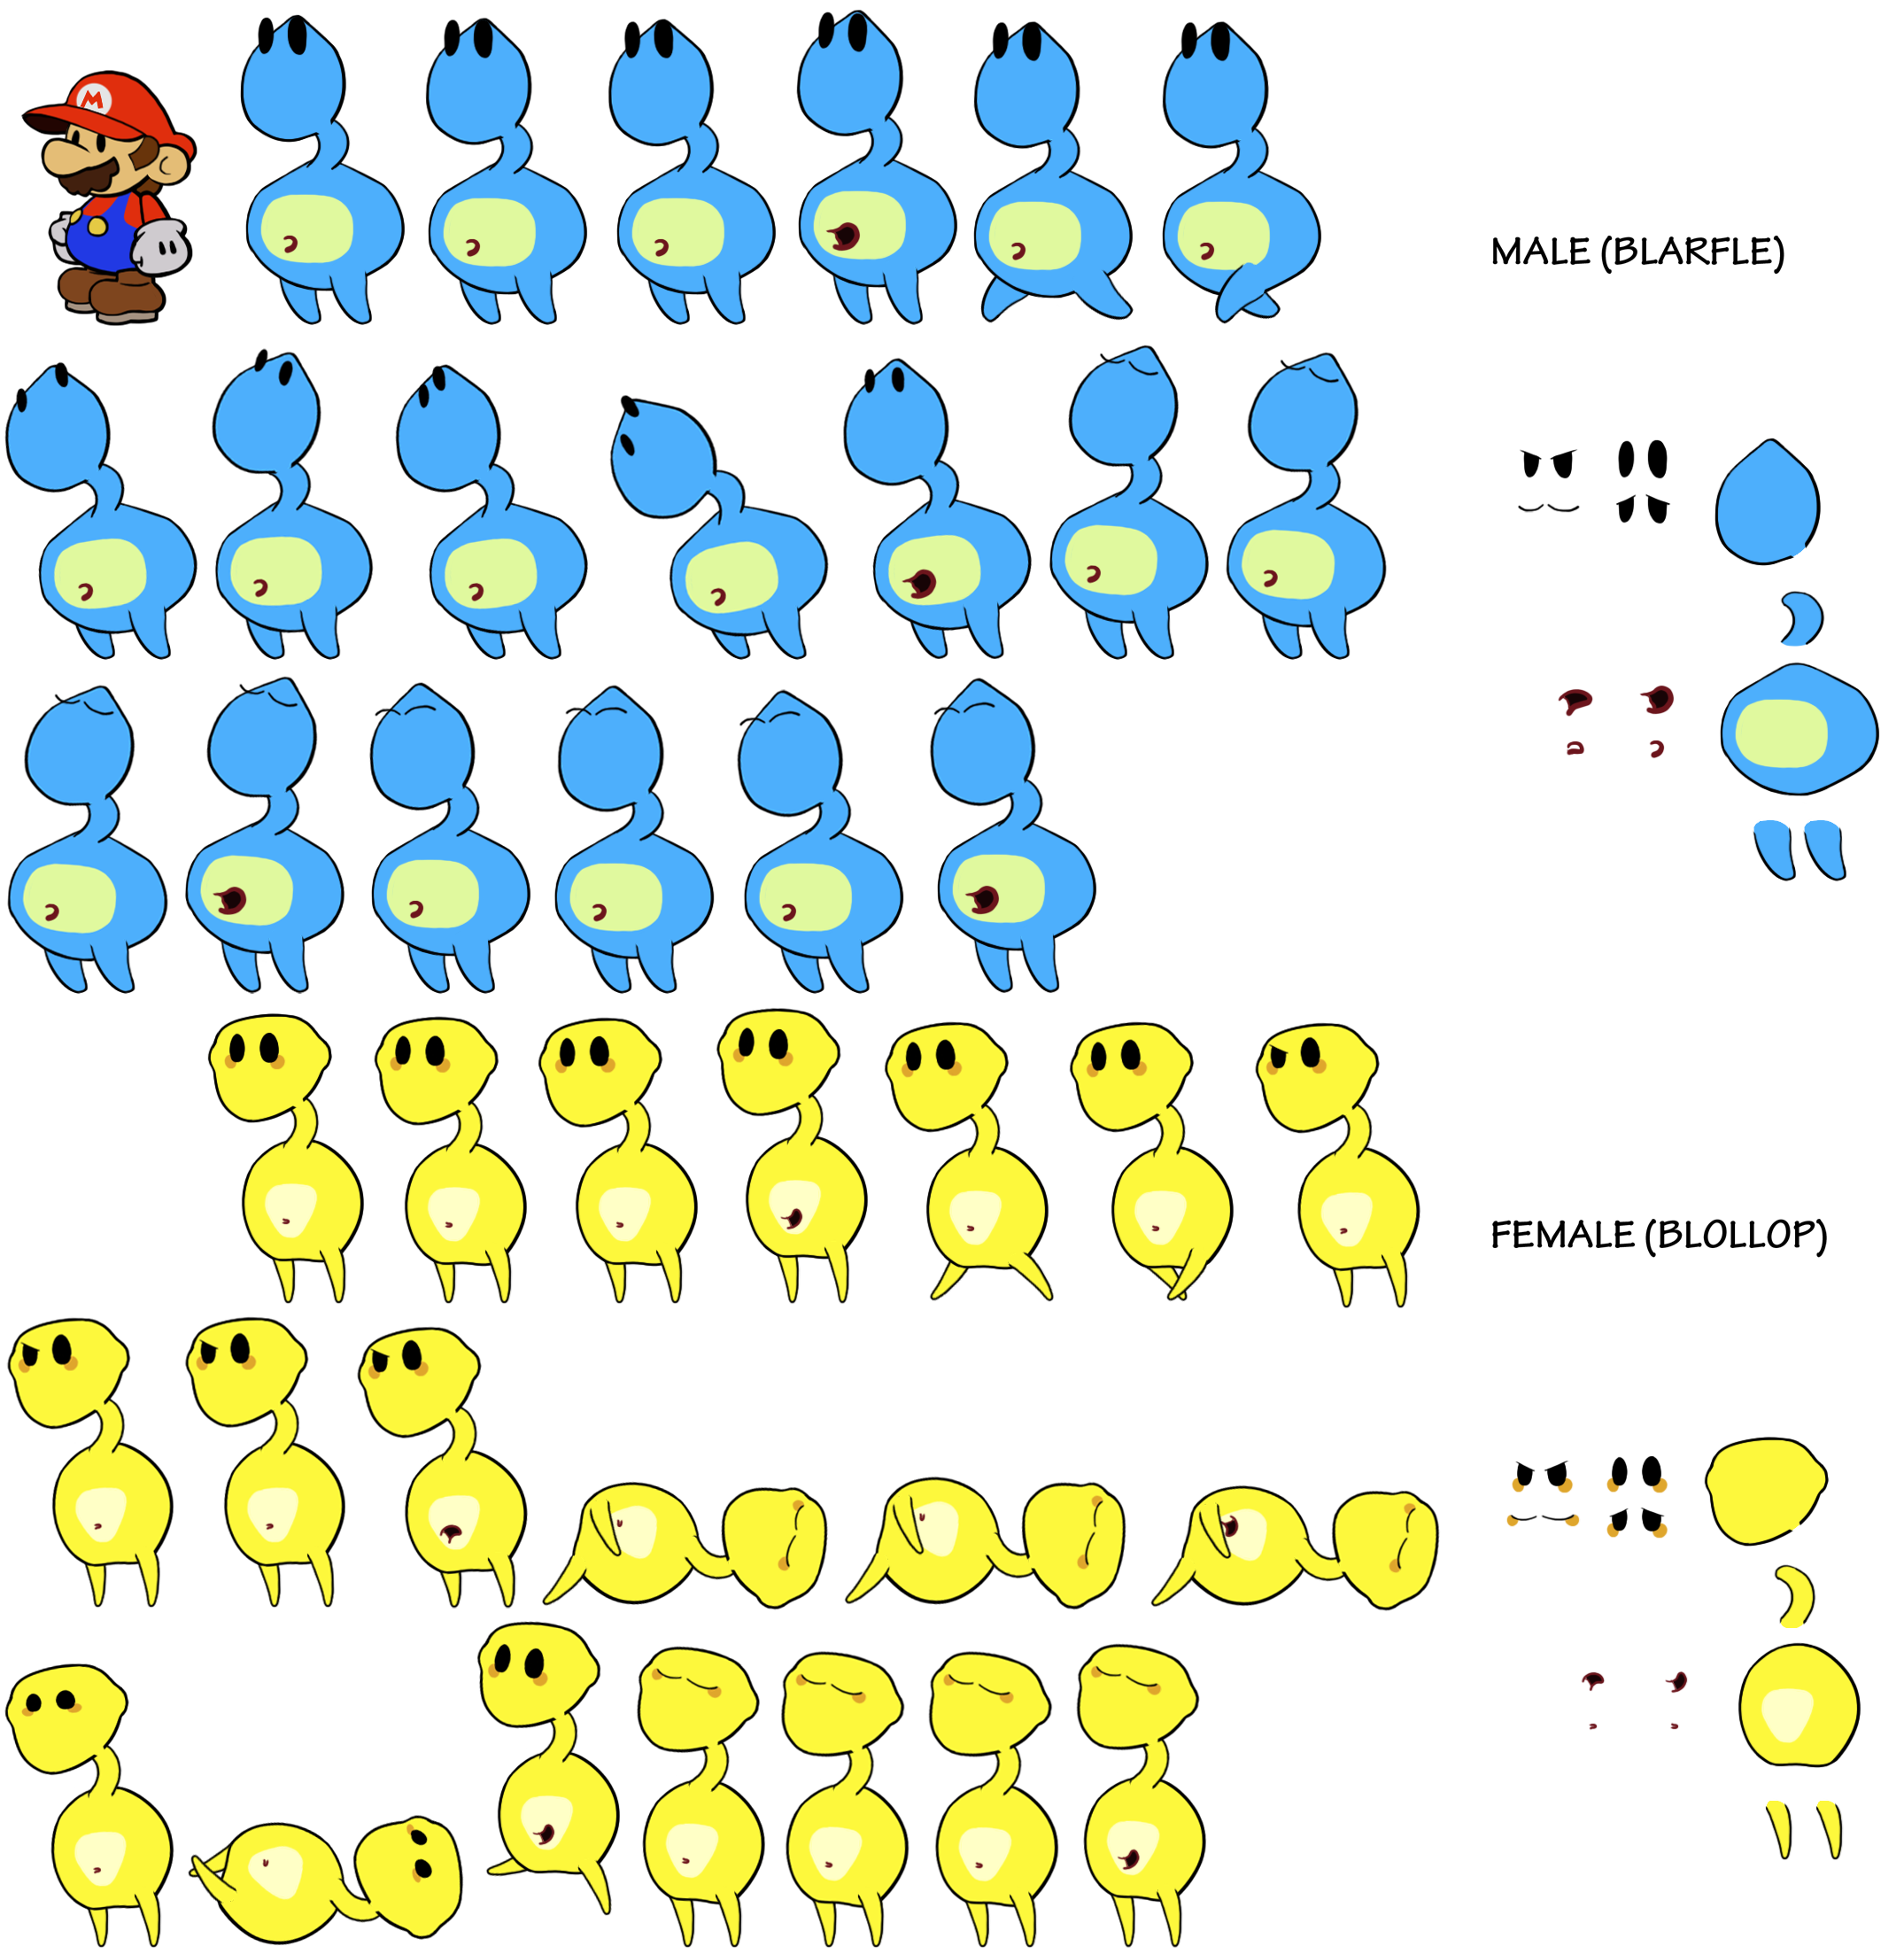 Paper Mario Customs - Blobules (Paper Mario-Style)